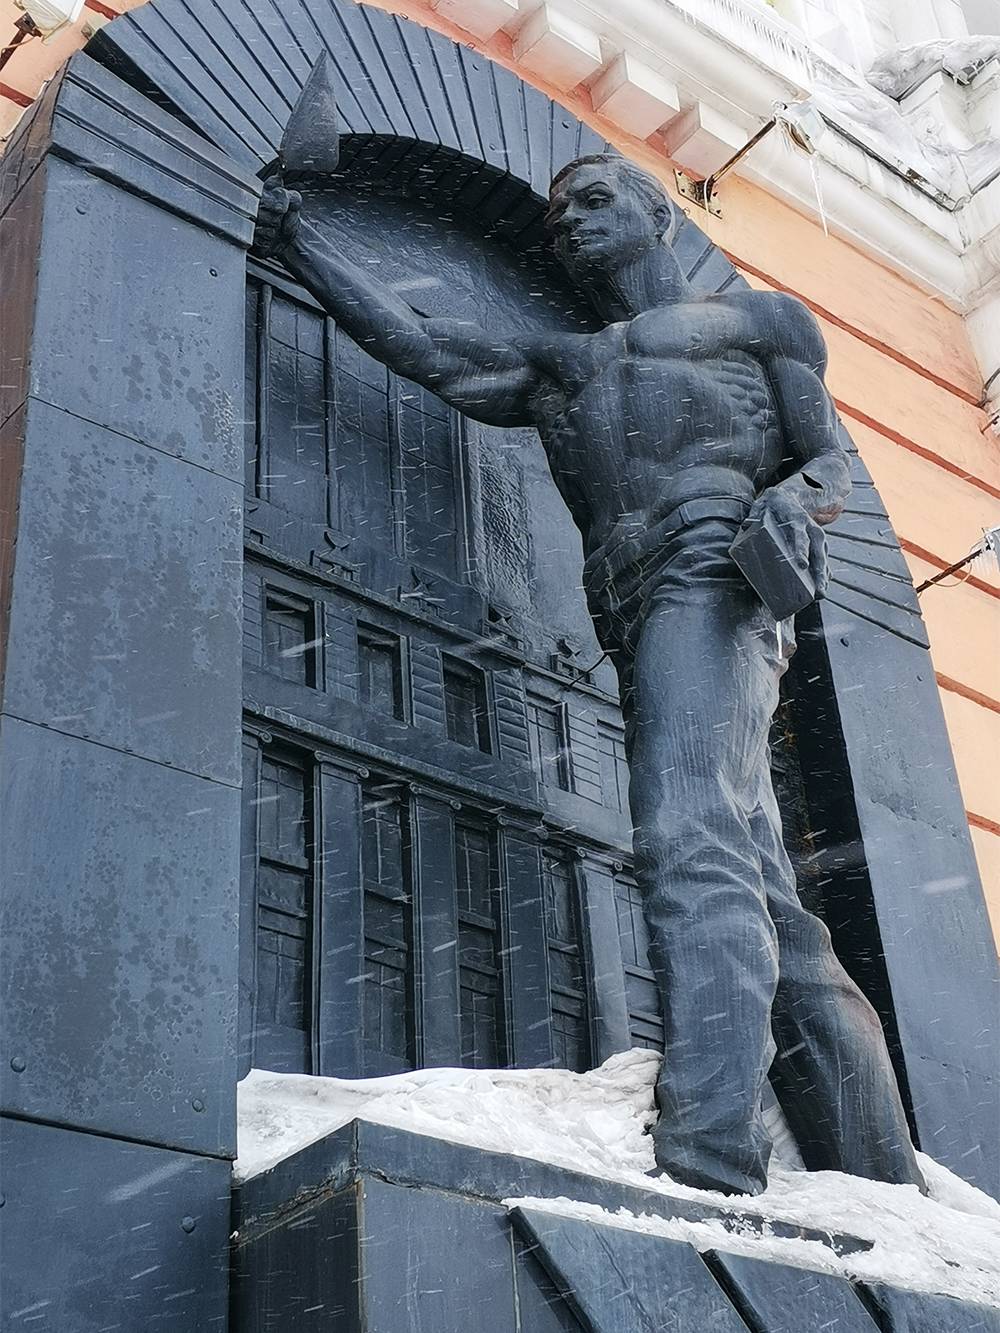 За углом кинотеатра «Родина» установлен памятник строителям Норильска. Он символизирует переход от барачного поселка к современному каменному городу